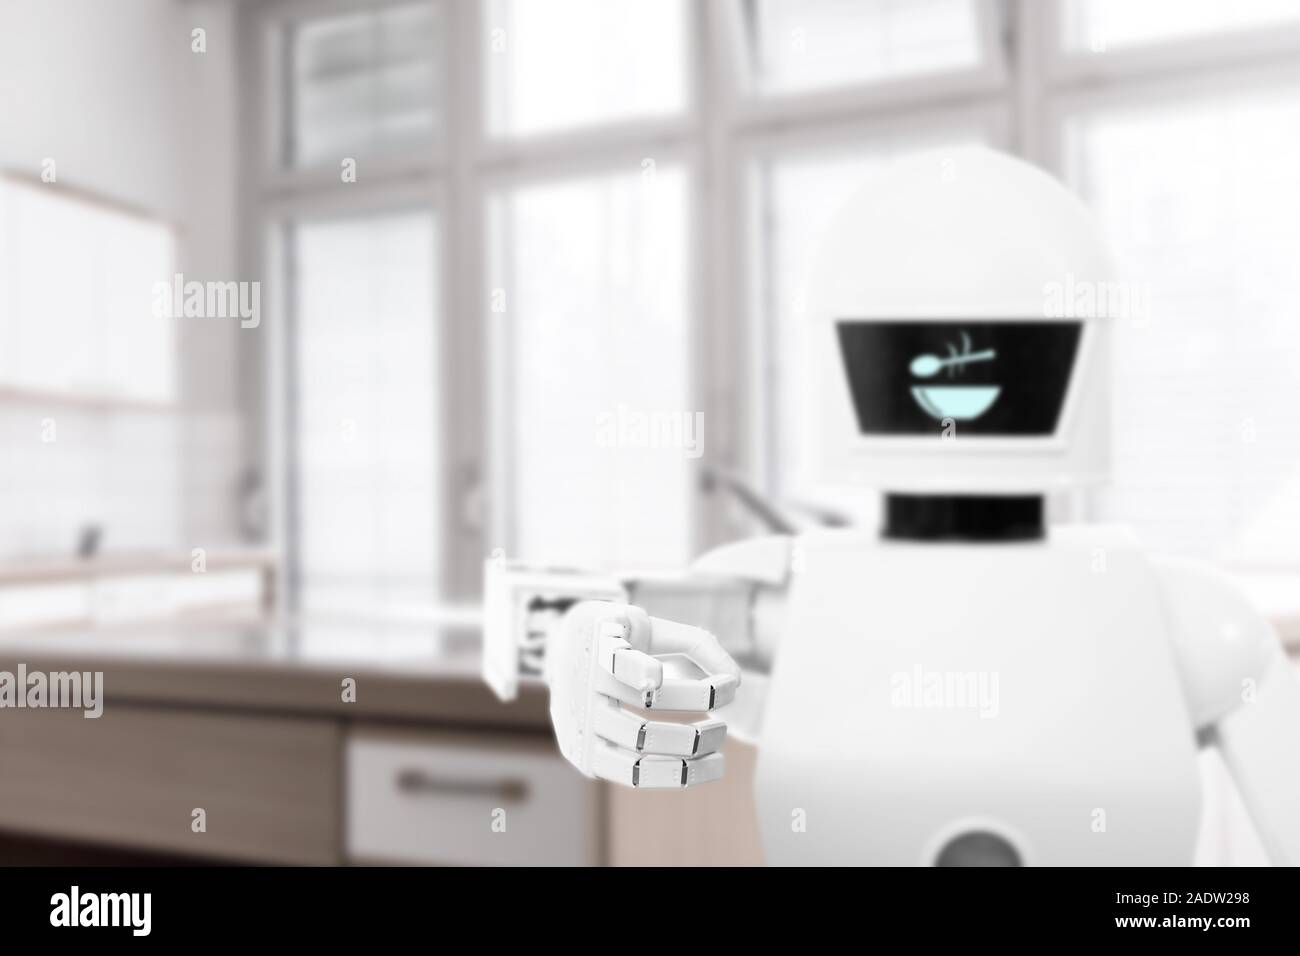 Servizio autonomo robot come il maggiordomo o cuoco in cucina, sta facendo i compiti a casa come cucinare Foto Stock